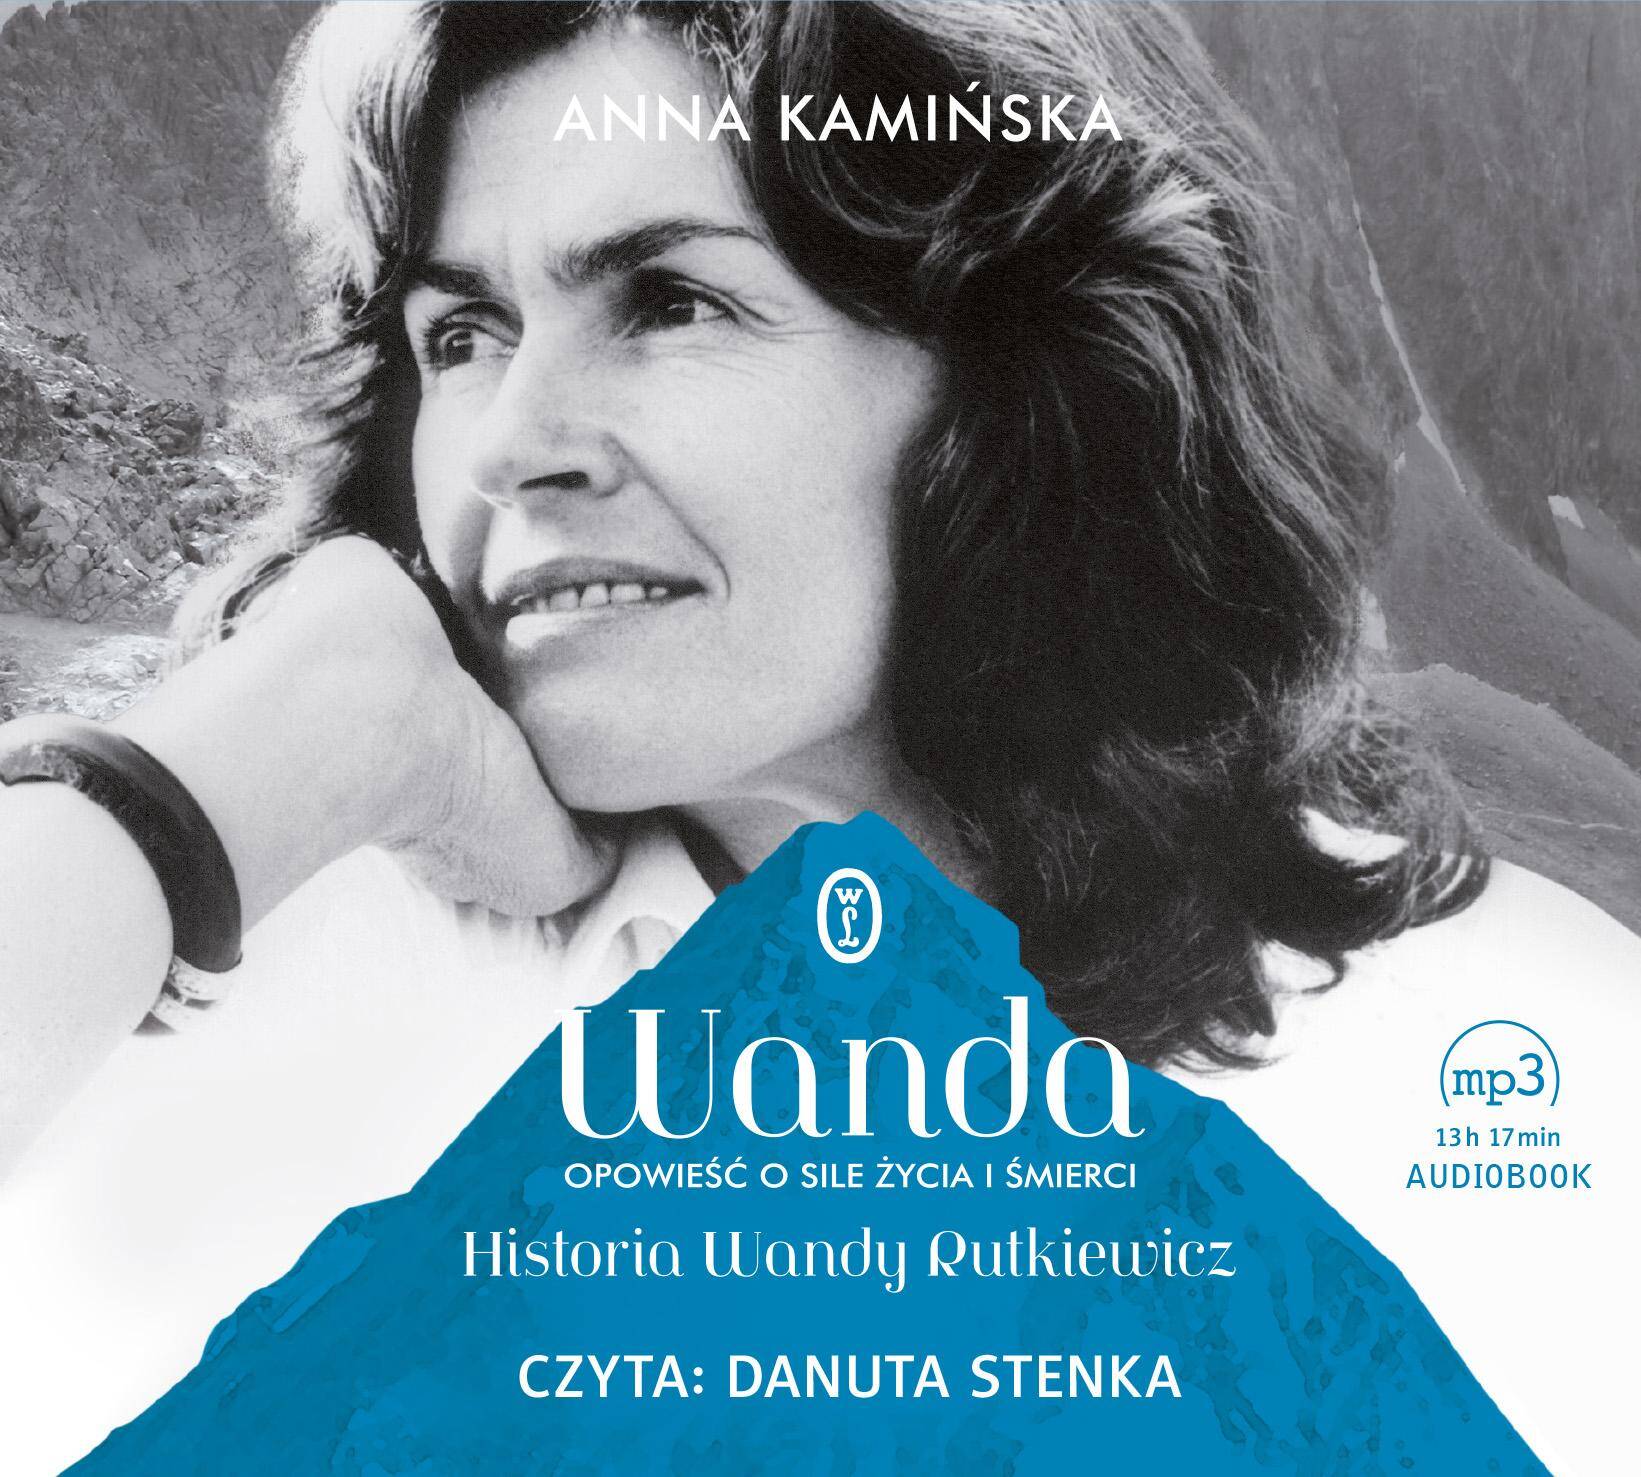 CD MP3 Wanda opowieść o sile życia i śmierci historia wandy rutkiewicz